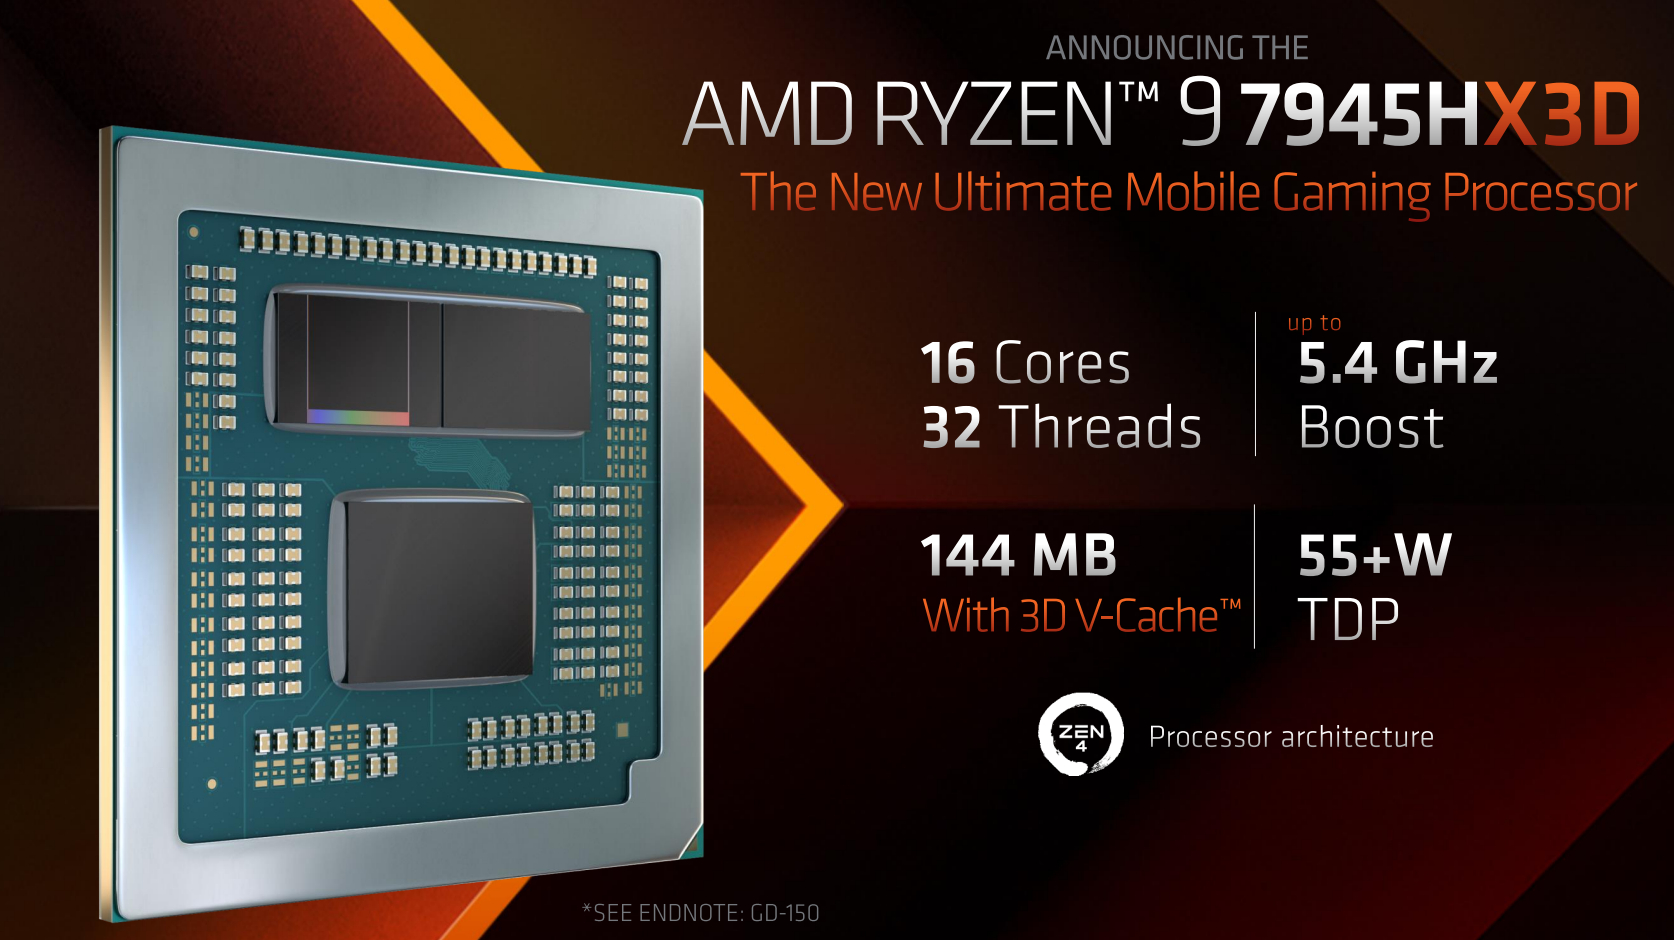 AMD Ryzen 9 7945HX3D Data